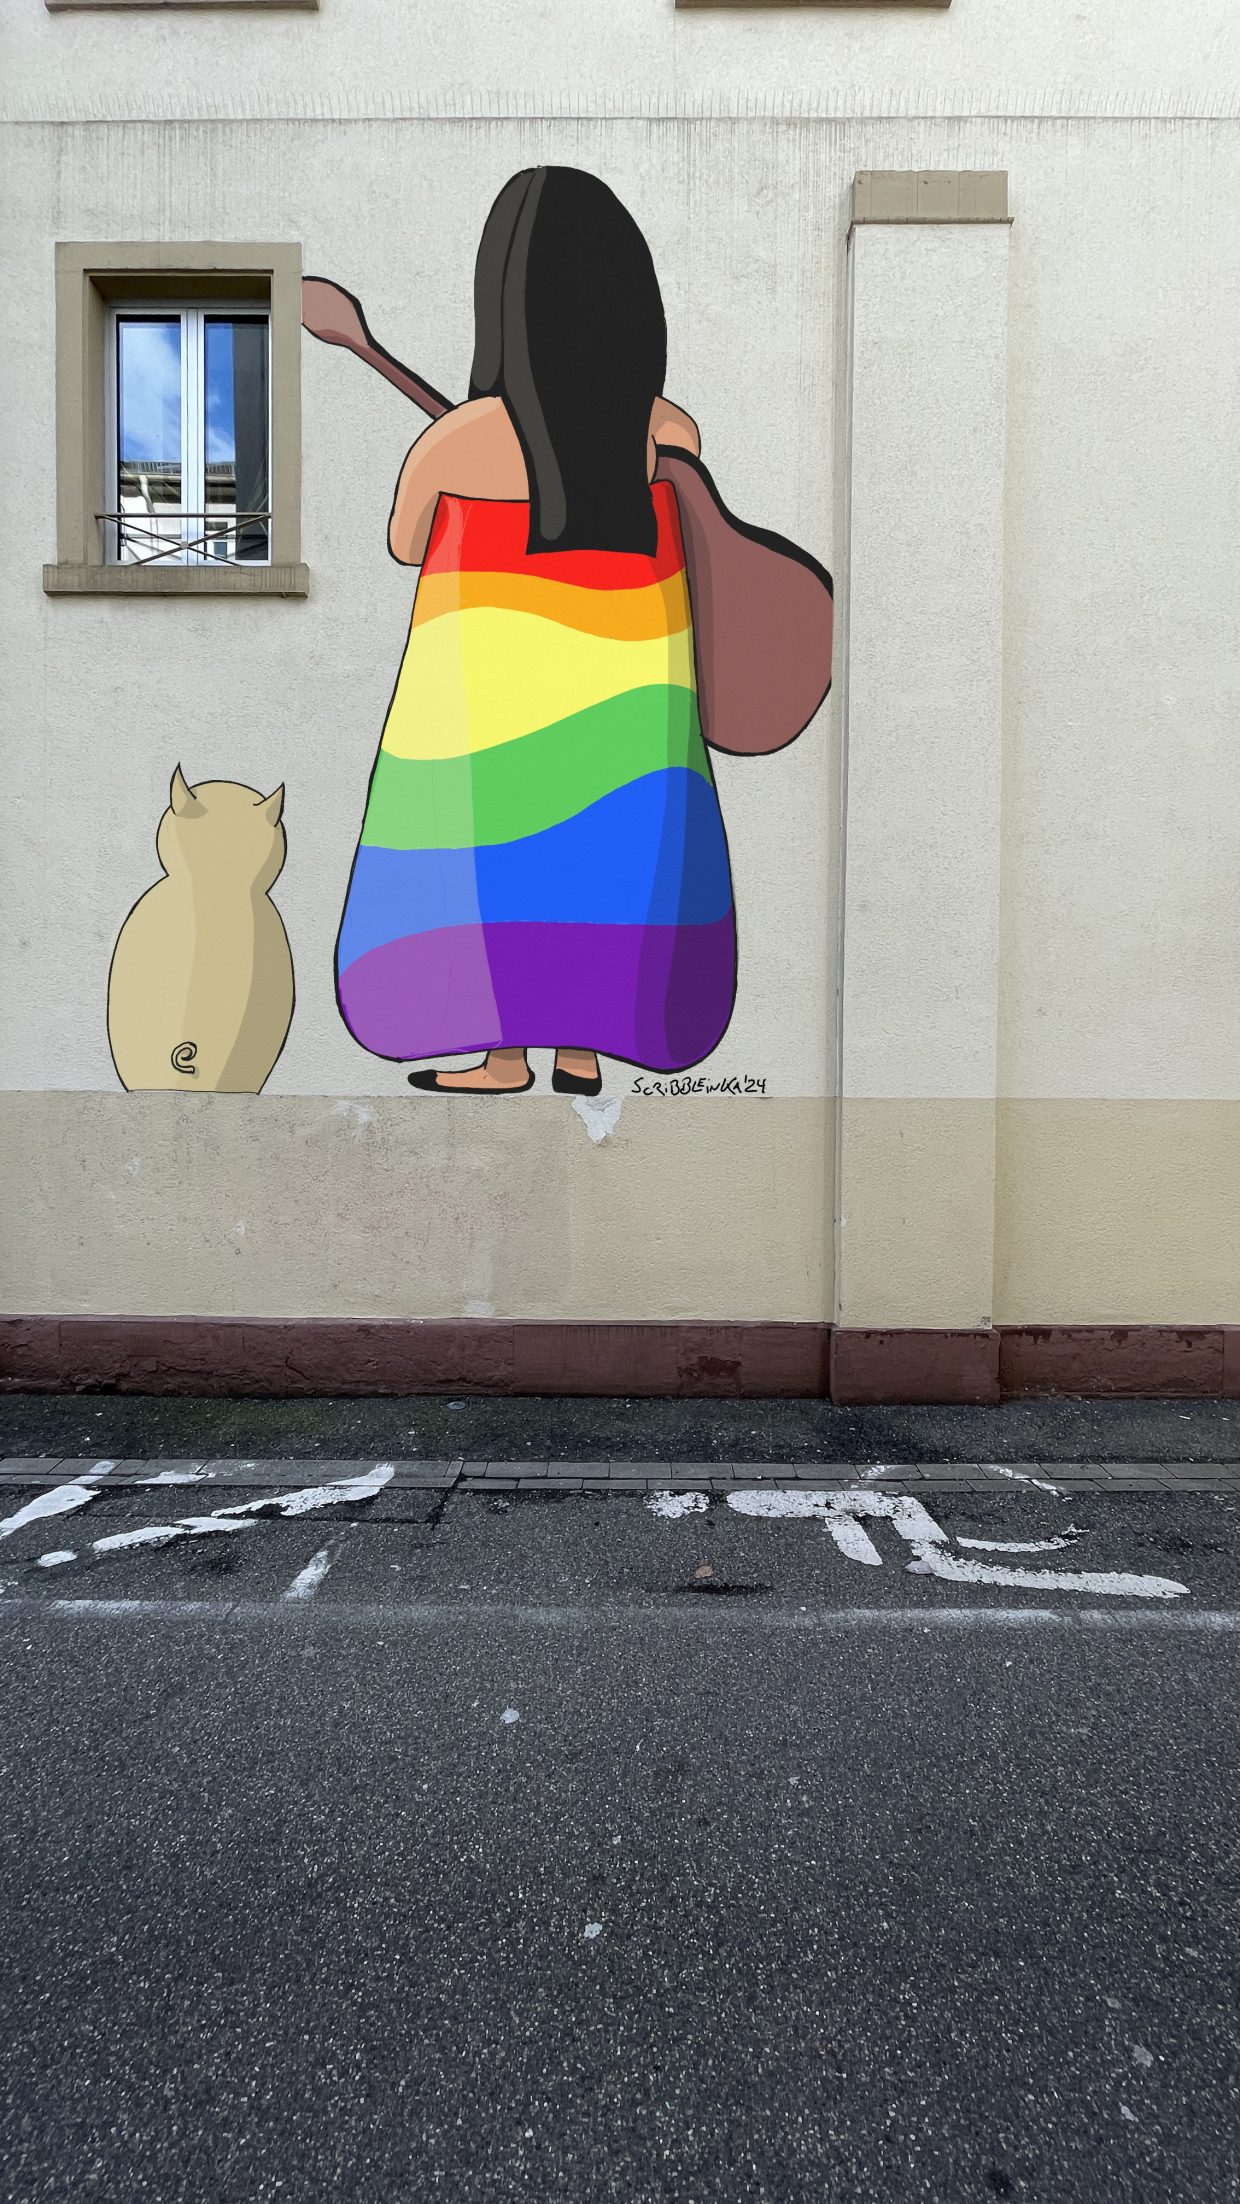 Bankhof Karlsruhe. Wandgemälde mit einer Frau, die ein Kleid in Regenbogenfarben trägt und eine Gitarre hält. Neben ihr sitzt ein Schwein.